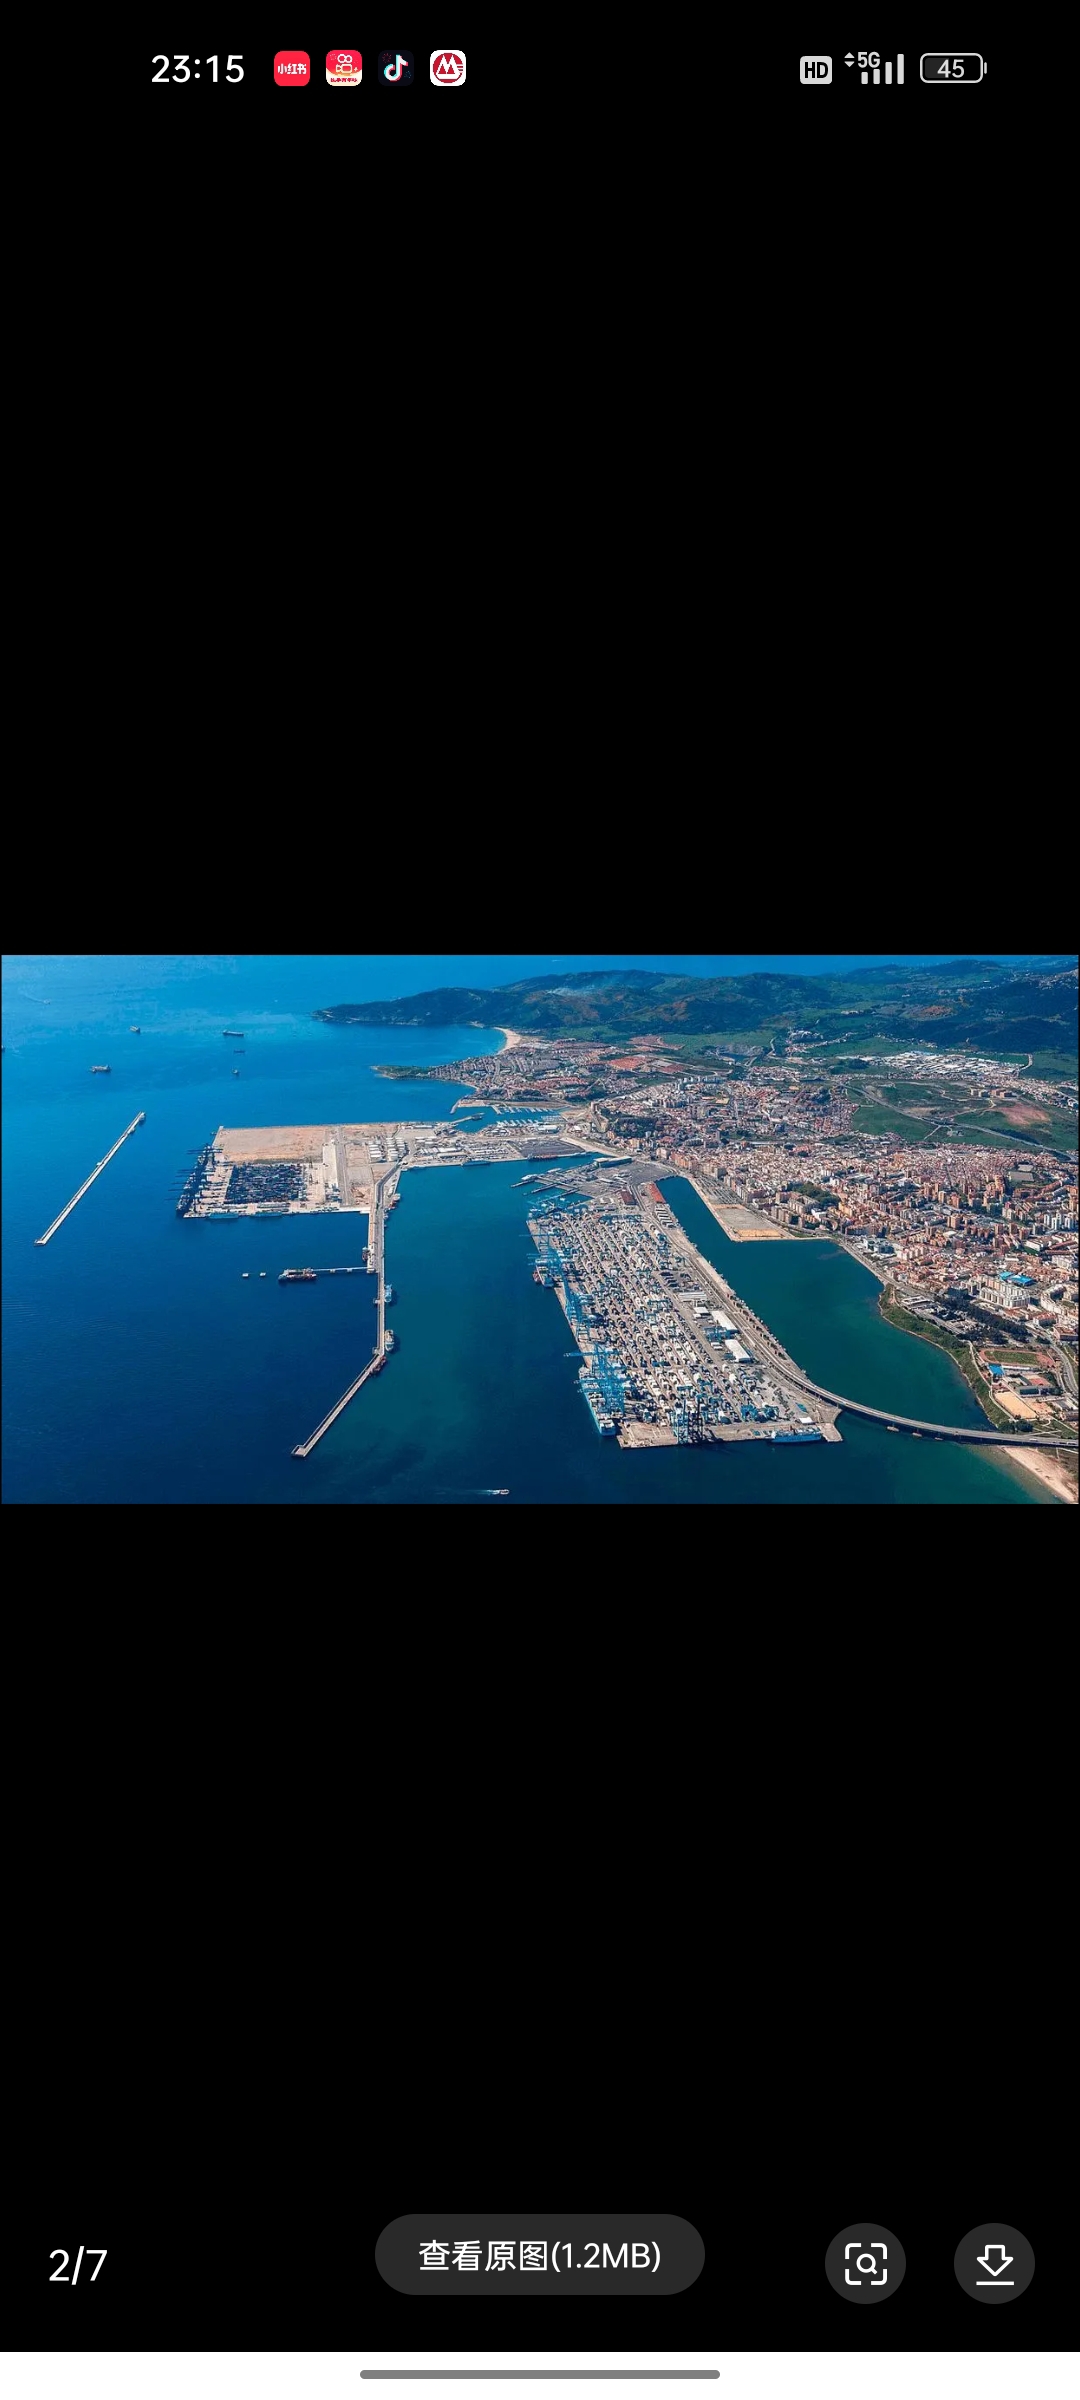 阿尔赫西拉斯港(联合国/地区代码：ESALG)位于西班牙南部。它是阿尔赫西拉斯市(西班牙的港口城市)